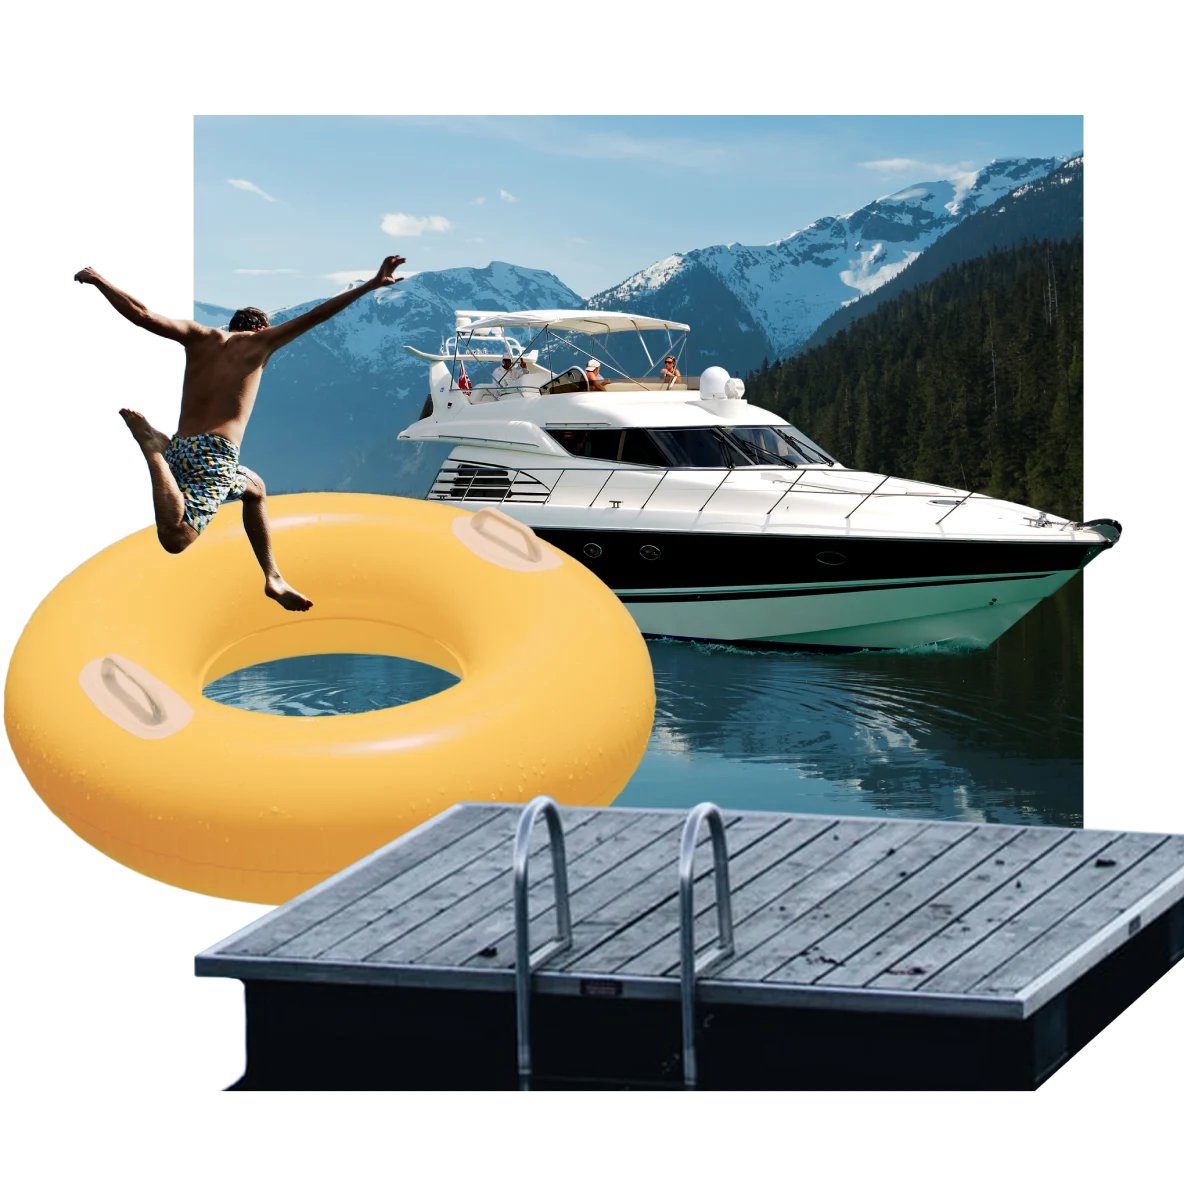 Collage de artículos de temática lacustre: barco en el centro en un lago azul metálico con muelle en primer plano. Nadador salta dentro de un flotador amarillo grande. Montañas con nieve en la cima en el fondo.